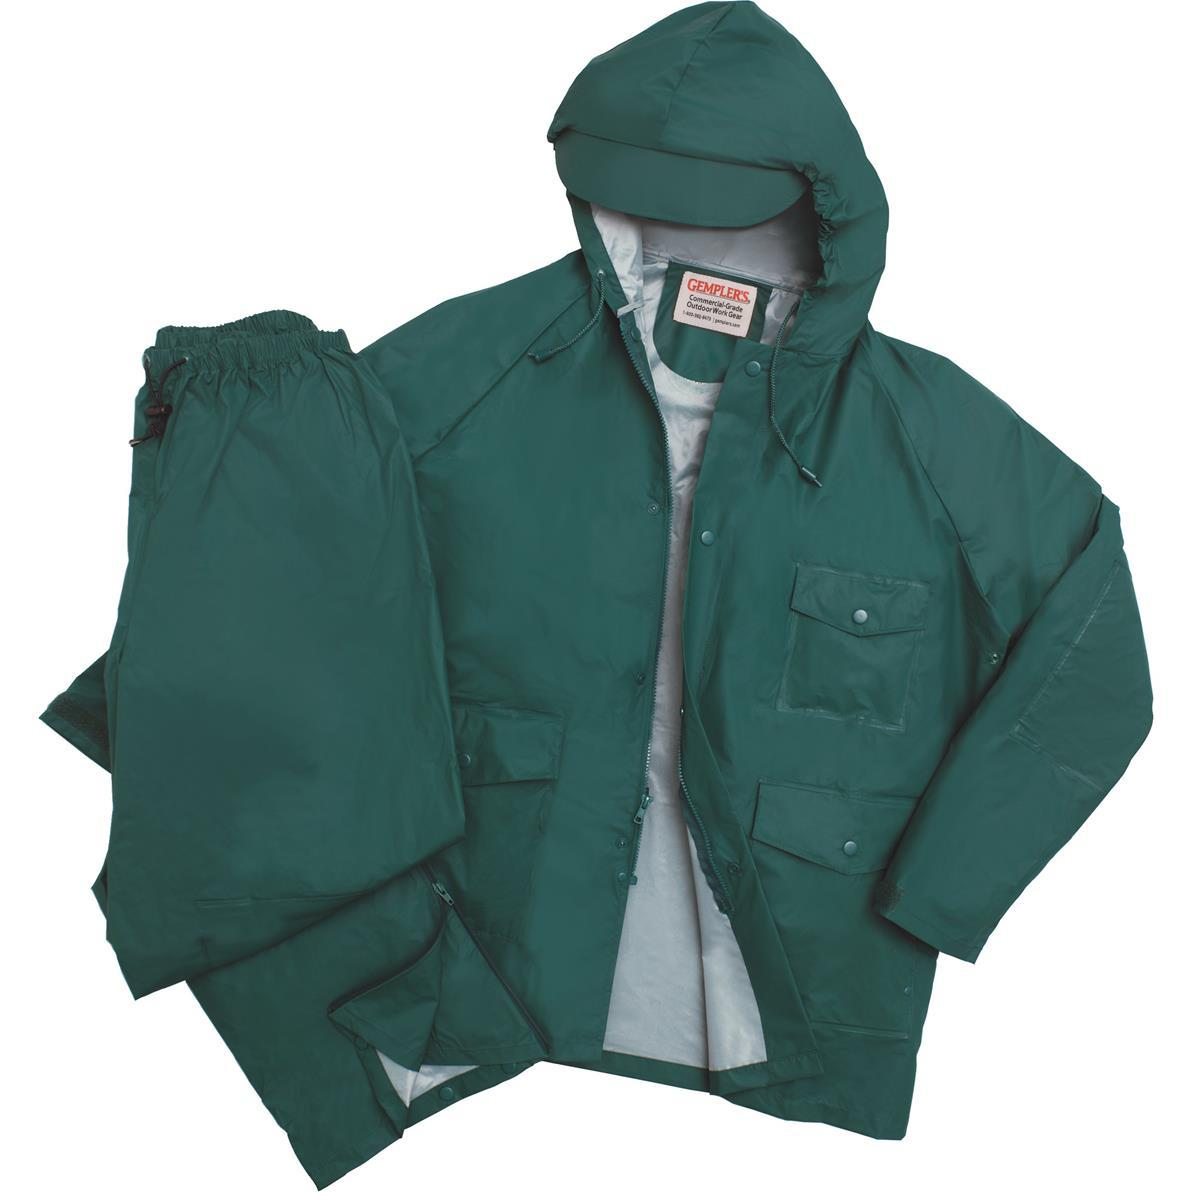 Image of PVC-on-Nylon Rain Jacket and Pants